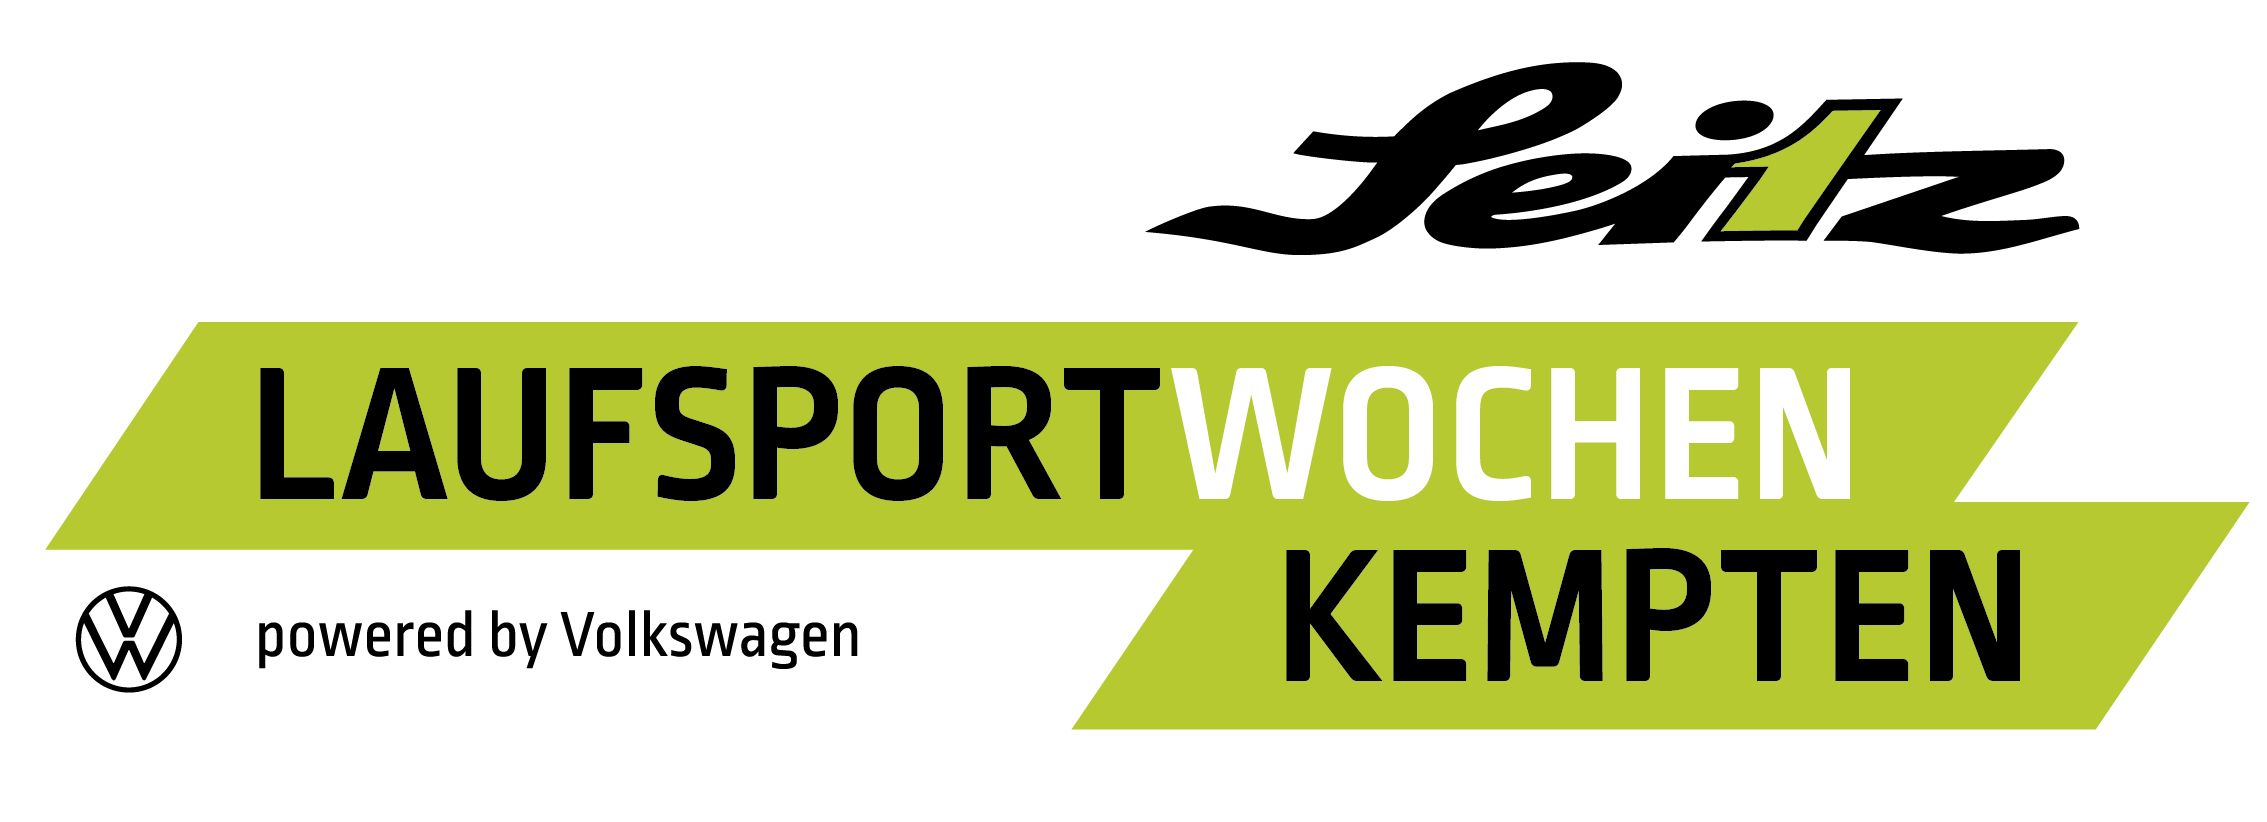 Logo Seitz Laufsportwochen vw cmyk 20210301 zugeschnitten